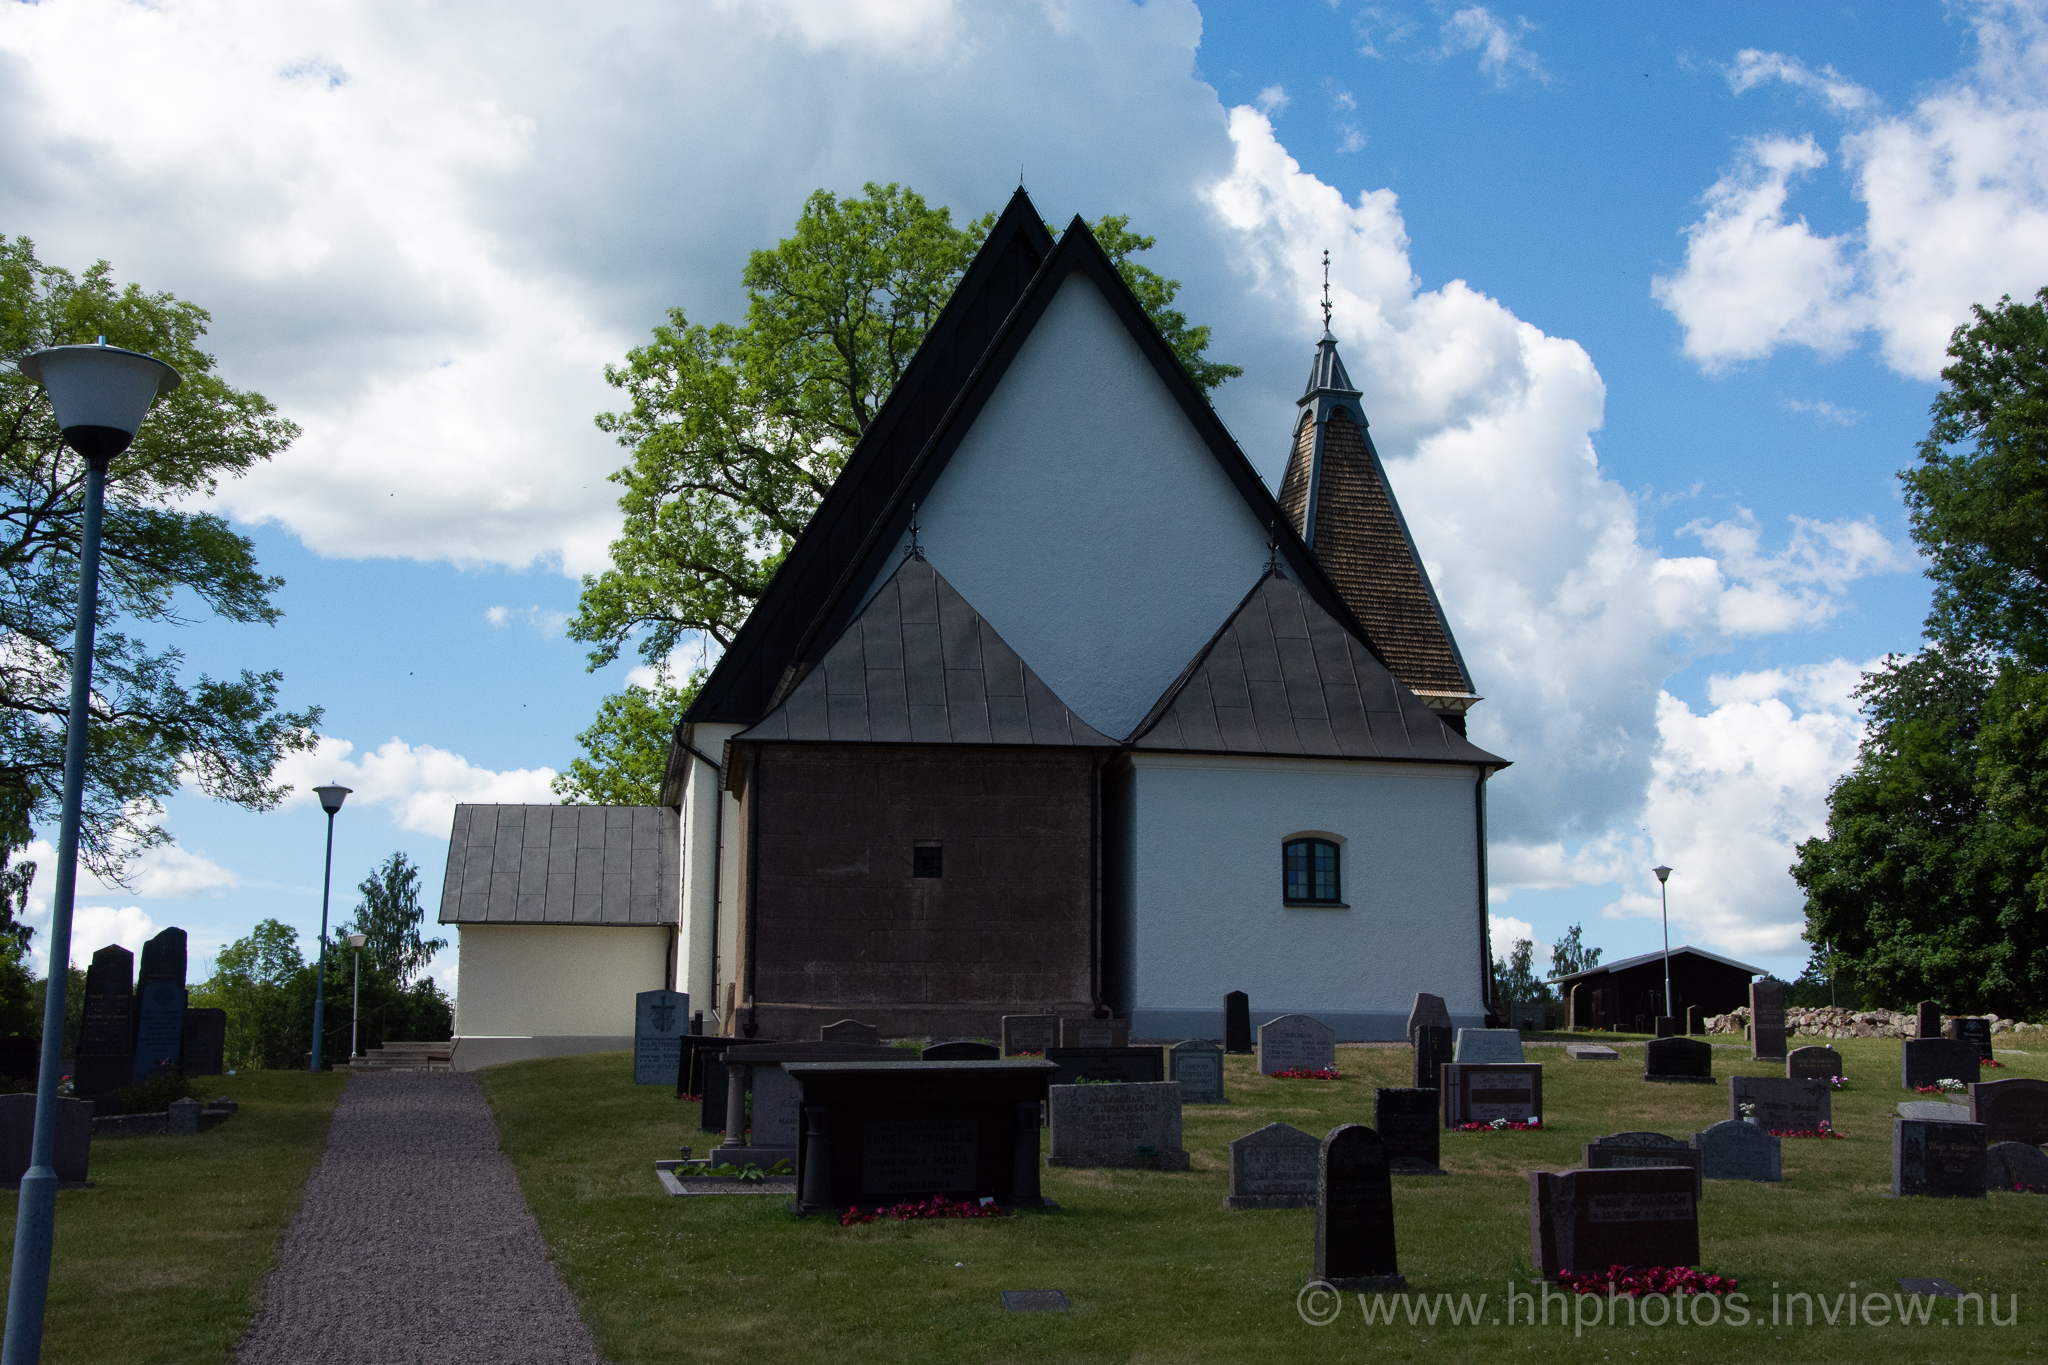 Grevbäcks kyrka / Grevbäck church